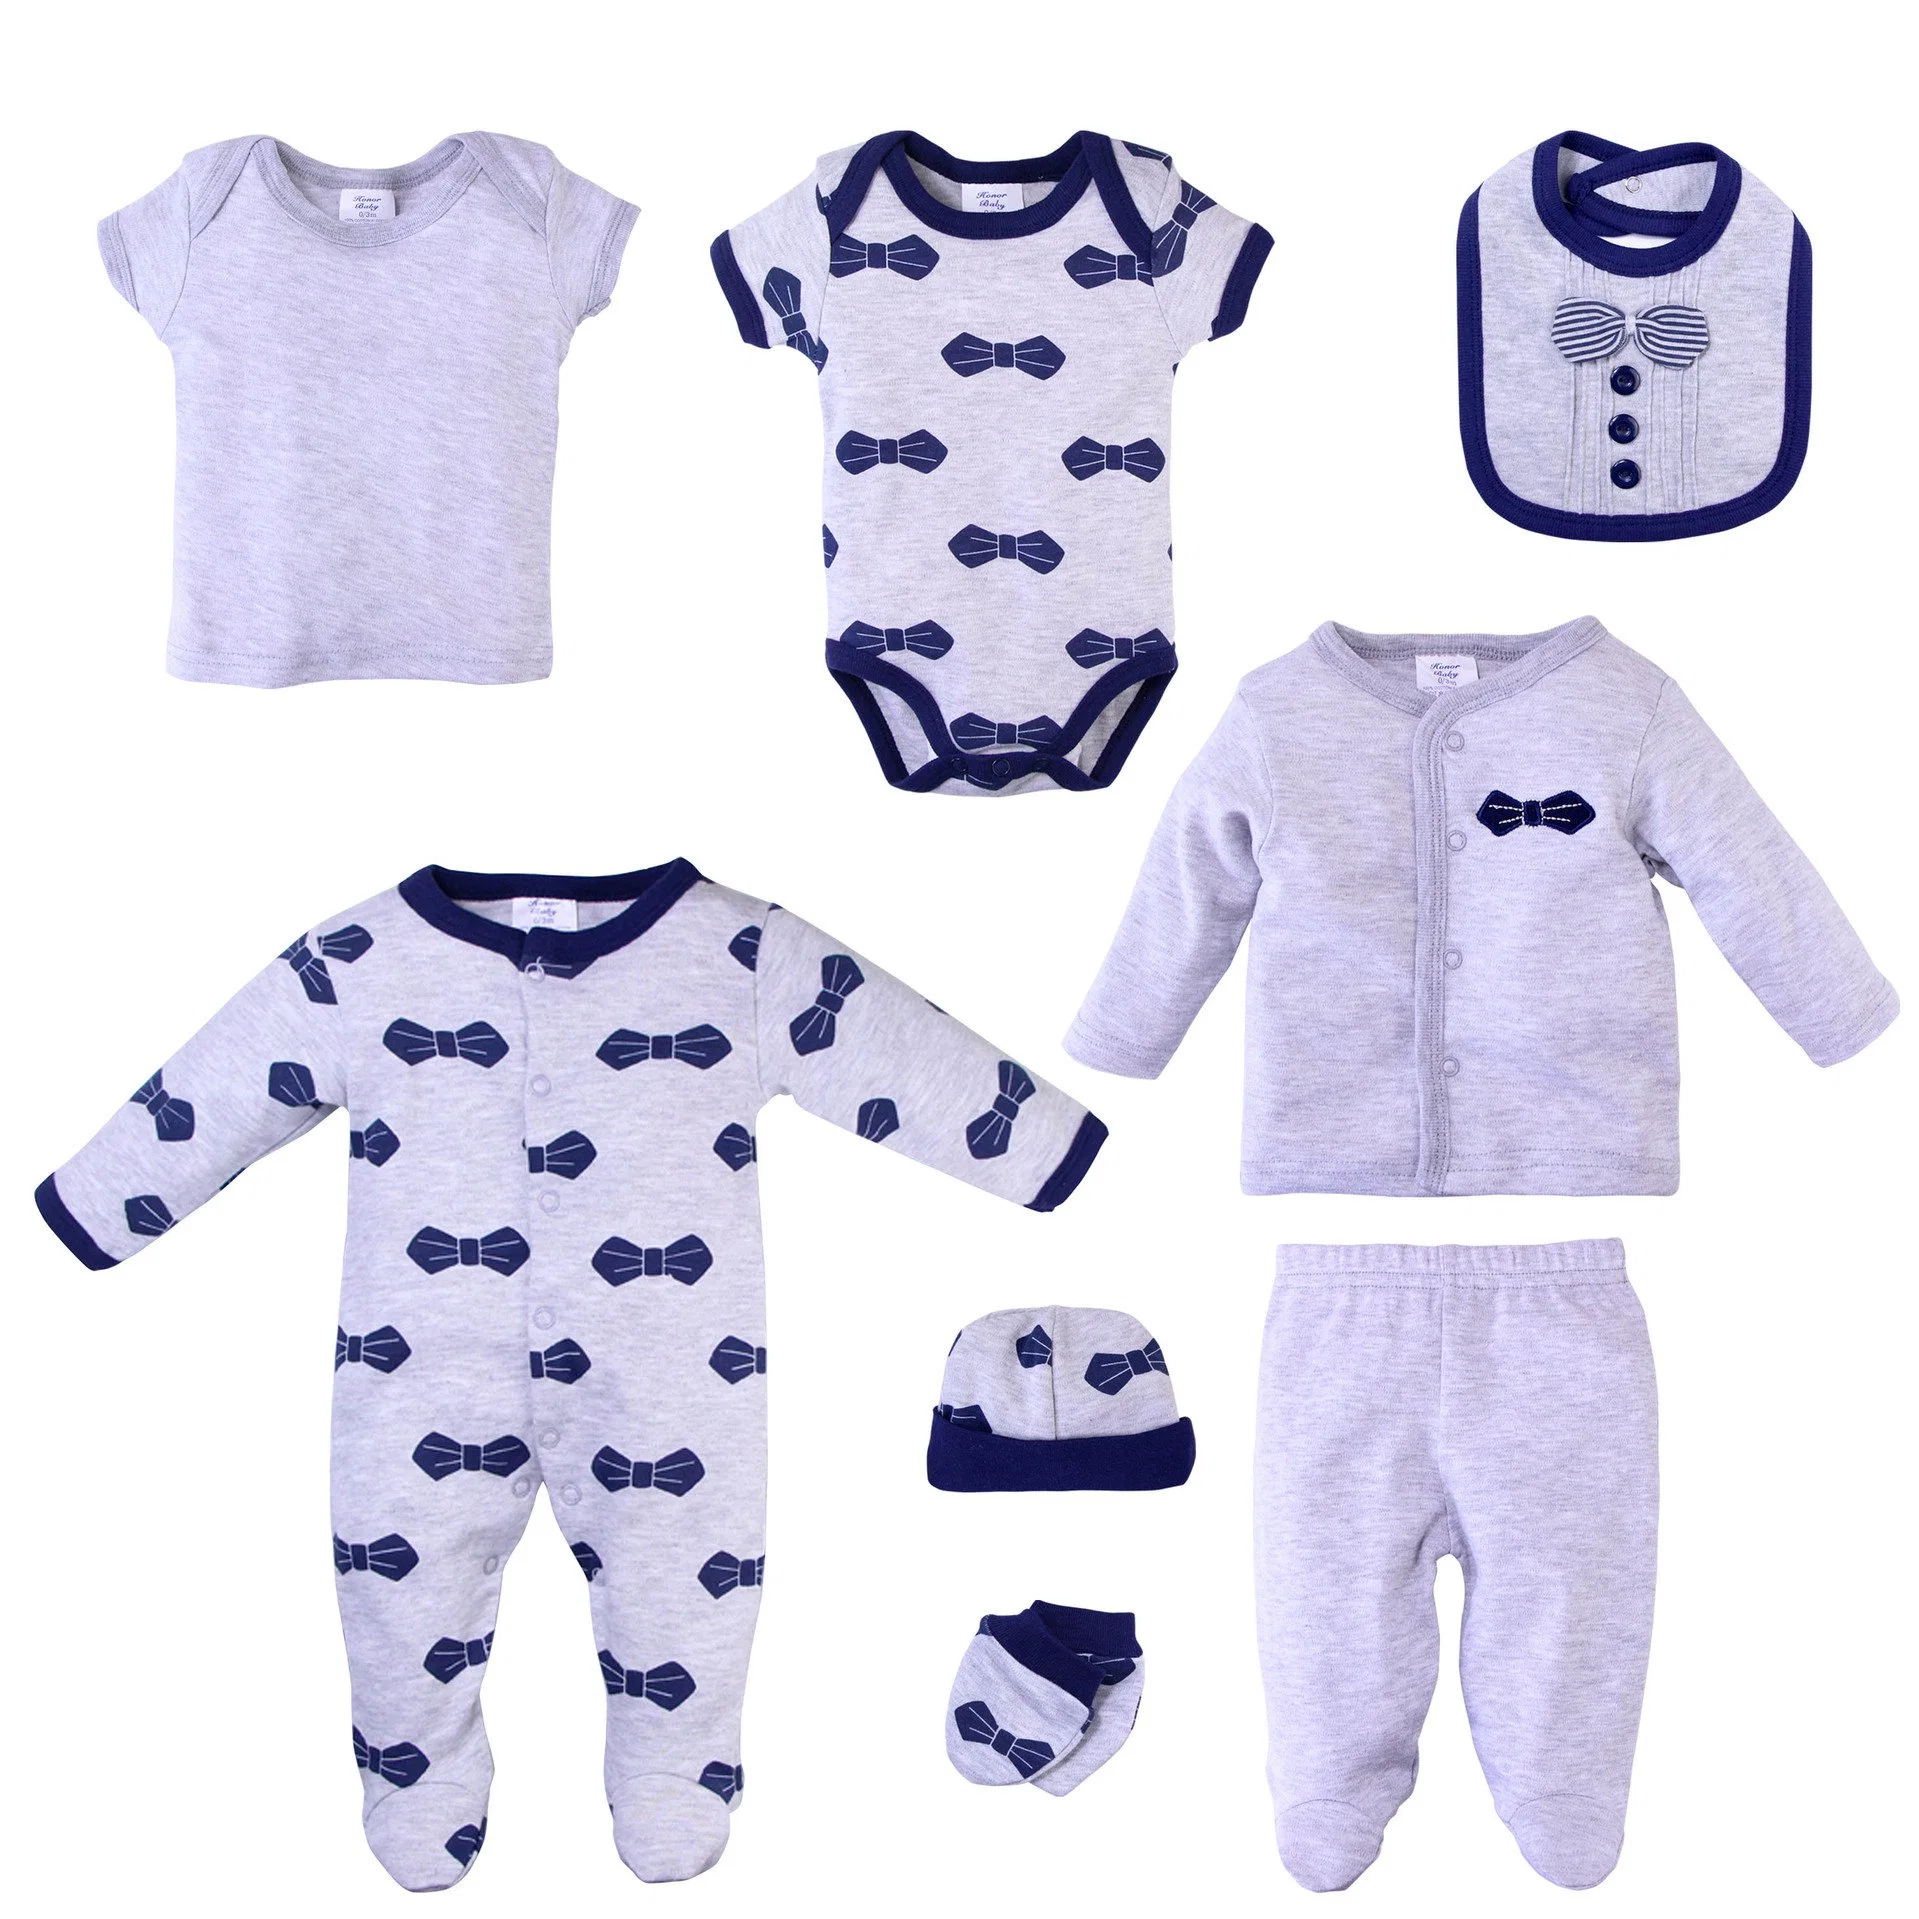 Оптовая упаковка 5PCS набор детской одежды для новорожденных Детские ромицы Pajamas Подарочные наборы Biba Mitten носки Hat Cotton Boy Girl Romper Набор детских одежды